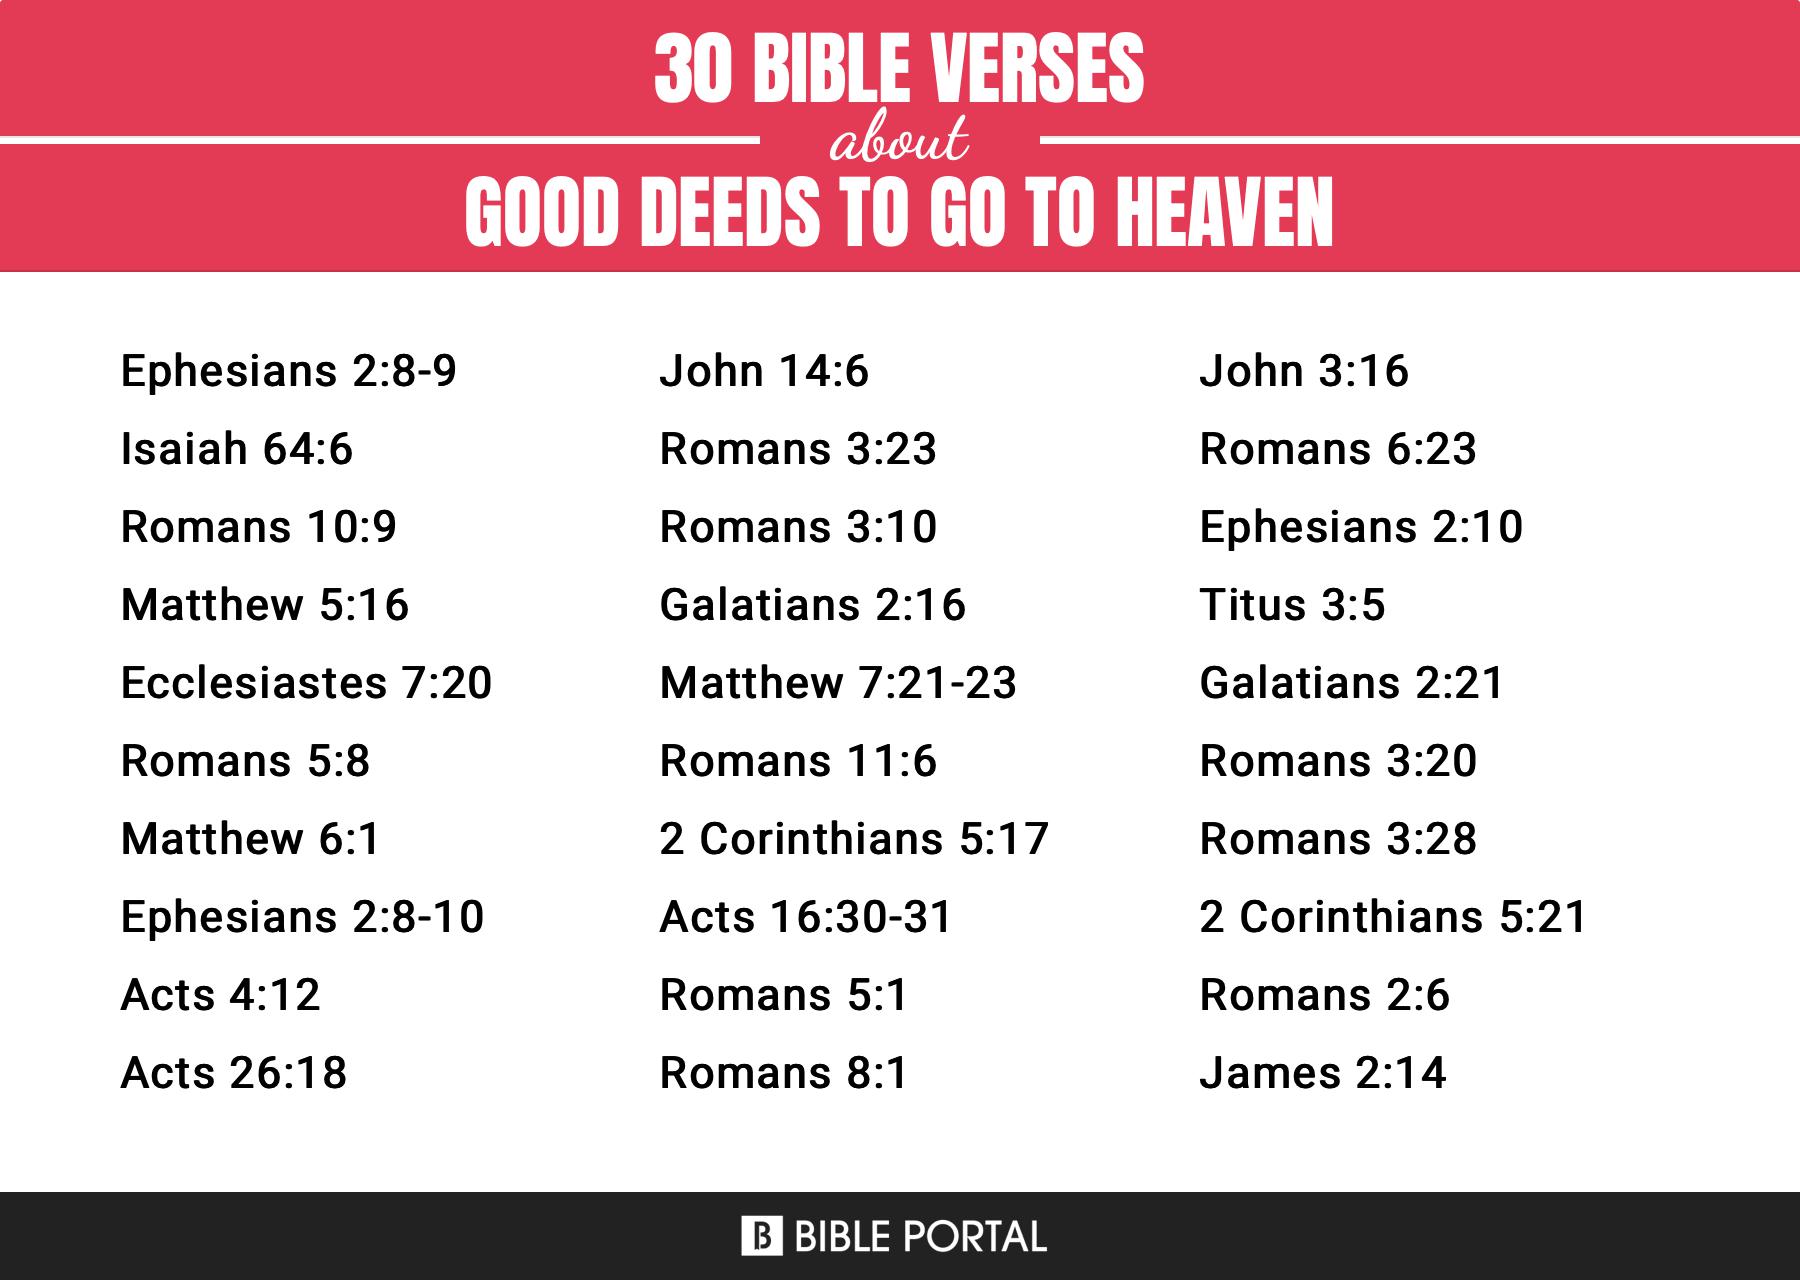 25 importantes versículos bíblicos sobre las buenas obras para ir al cielo